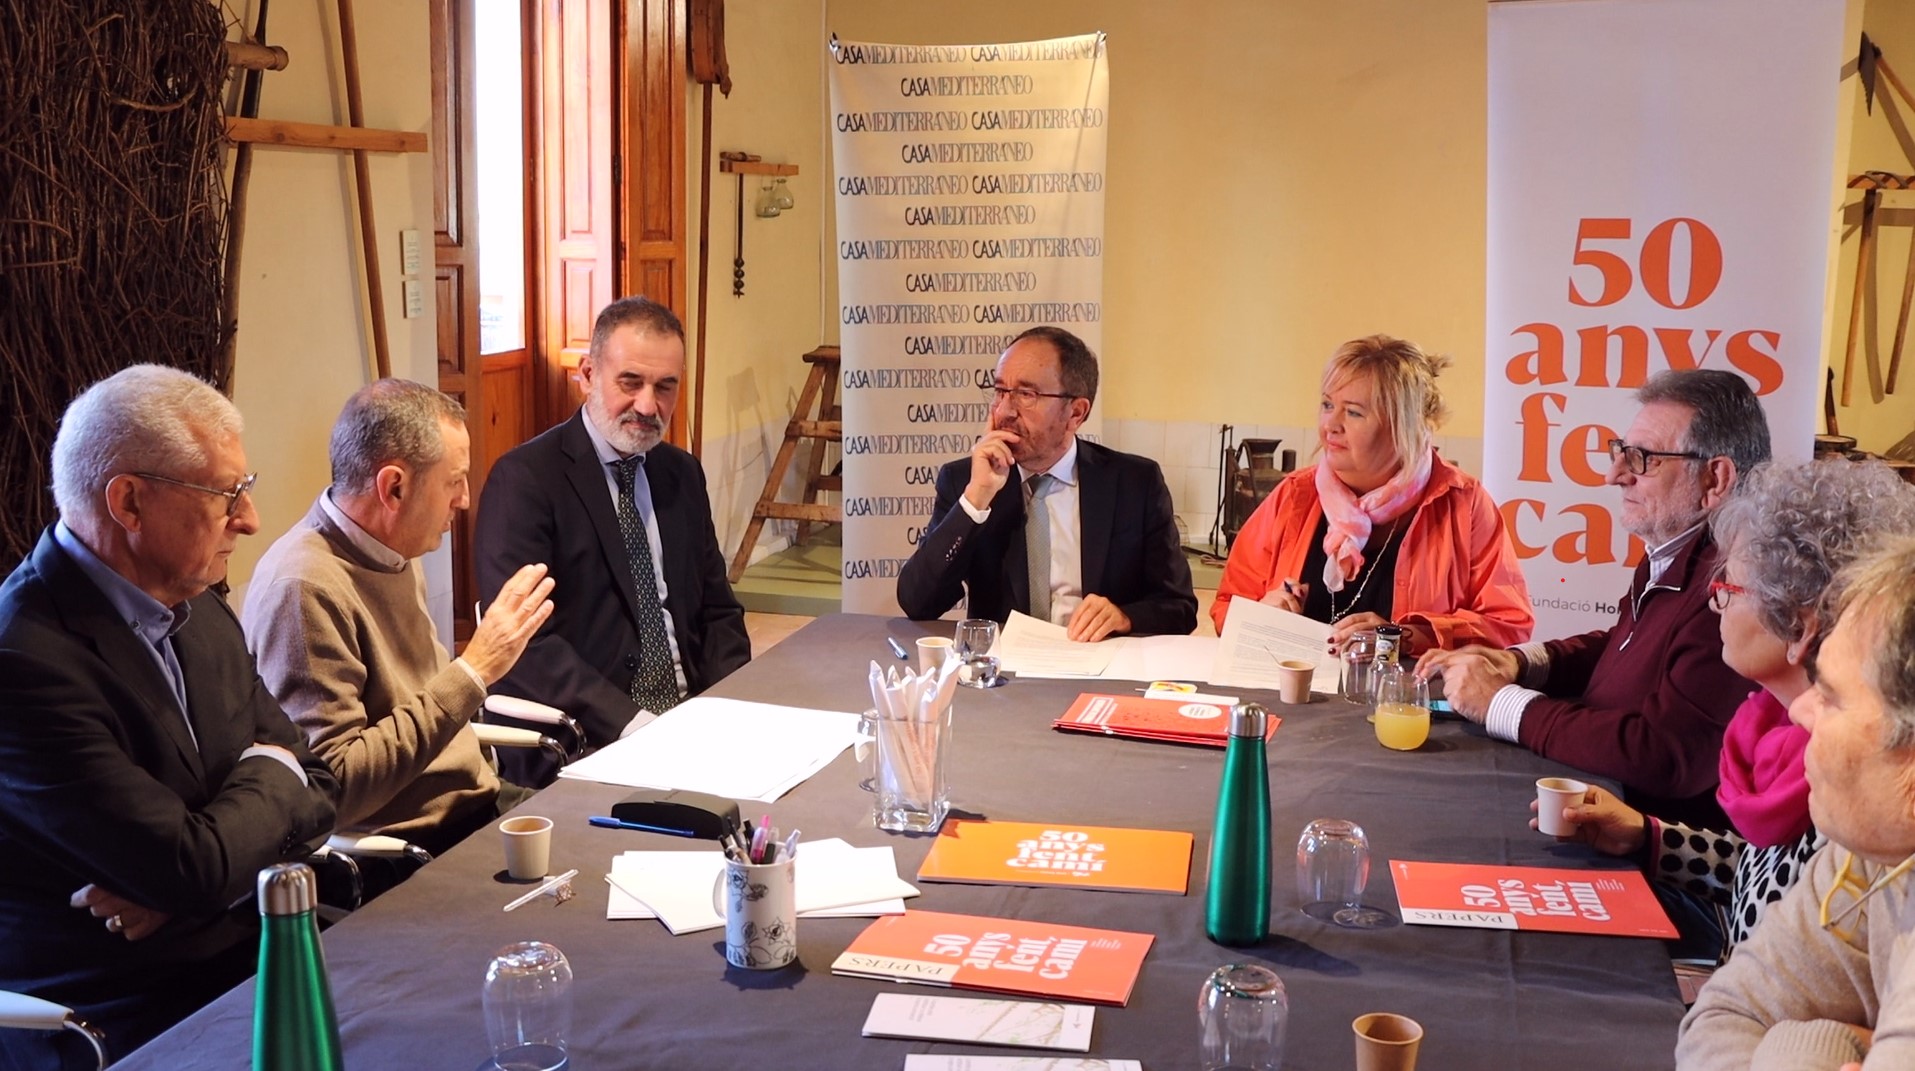 Torrent participa en un encuentro con la Fundació de L’Horta Sud y Casa Mediterráneo para impulsar proyectos de cooperación mediterránea